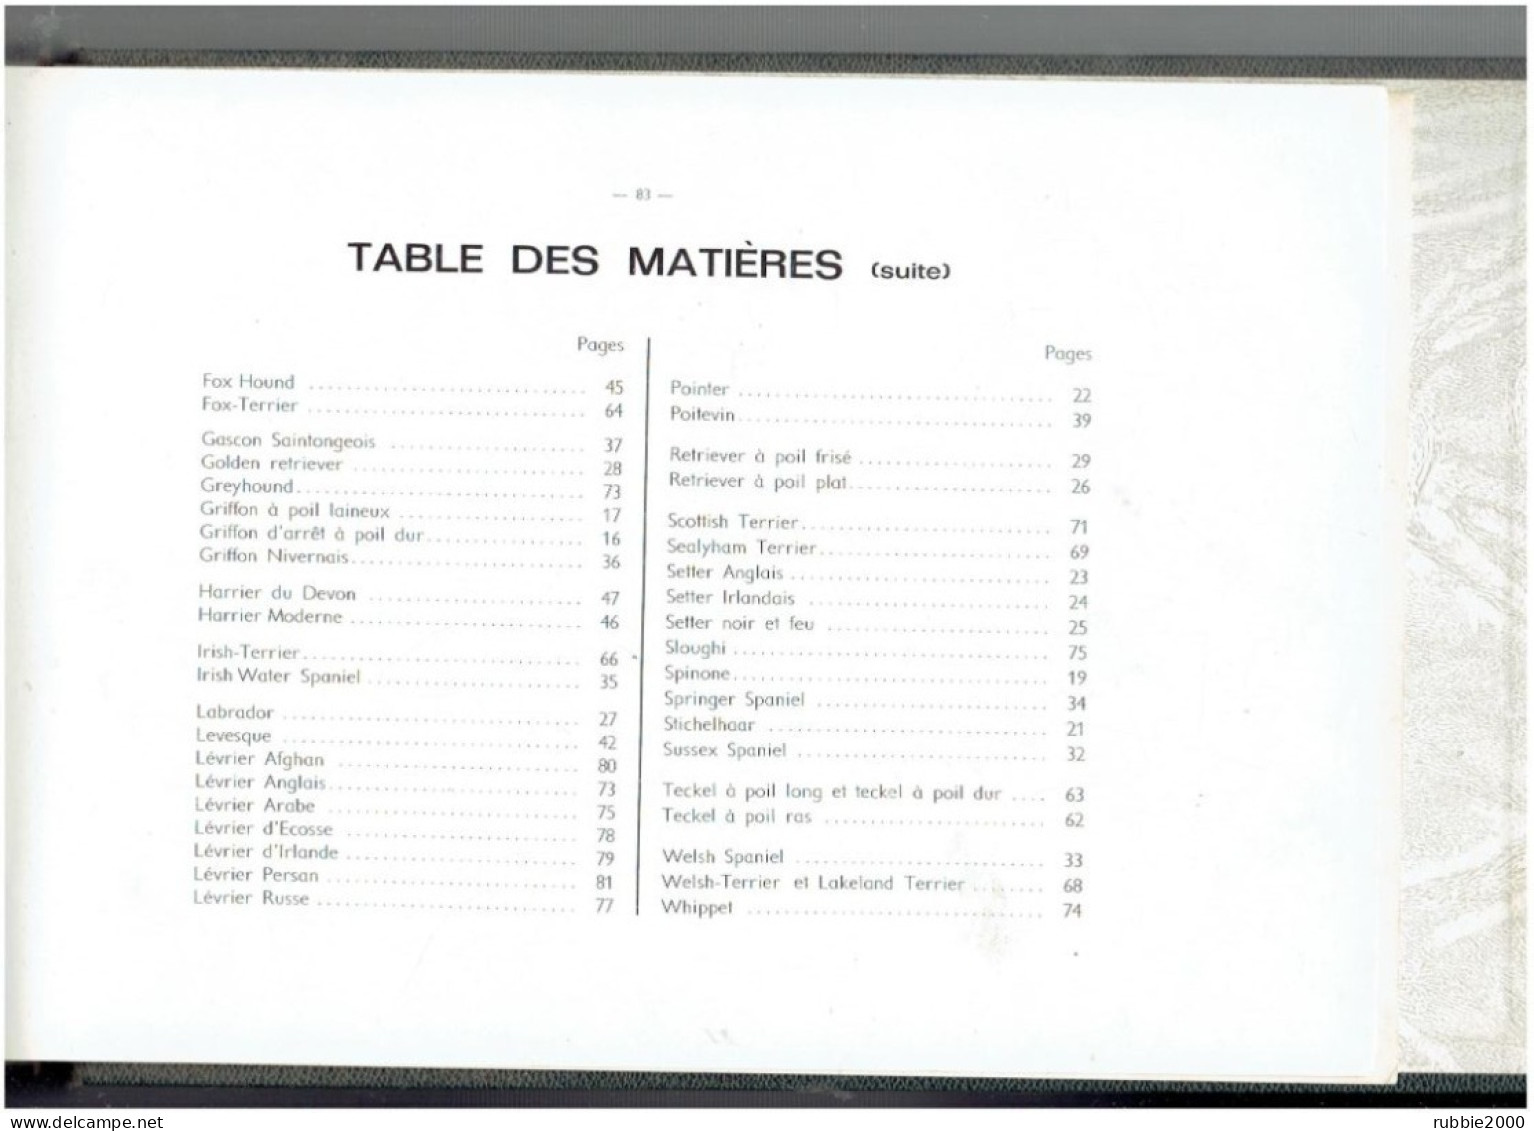 Les Chiens De Chasse. Monogaphies De Chiens D'arrêt, Chiens Courants, Terriers Et Lévriers. Manufrance. 1965 - Jacht/vissen